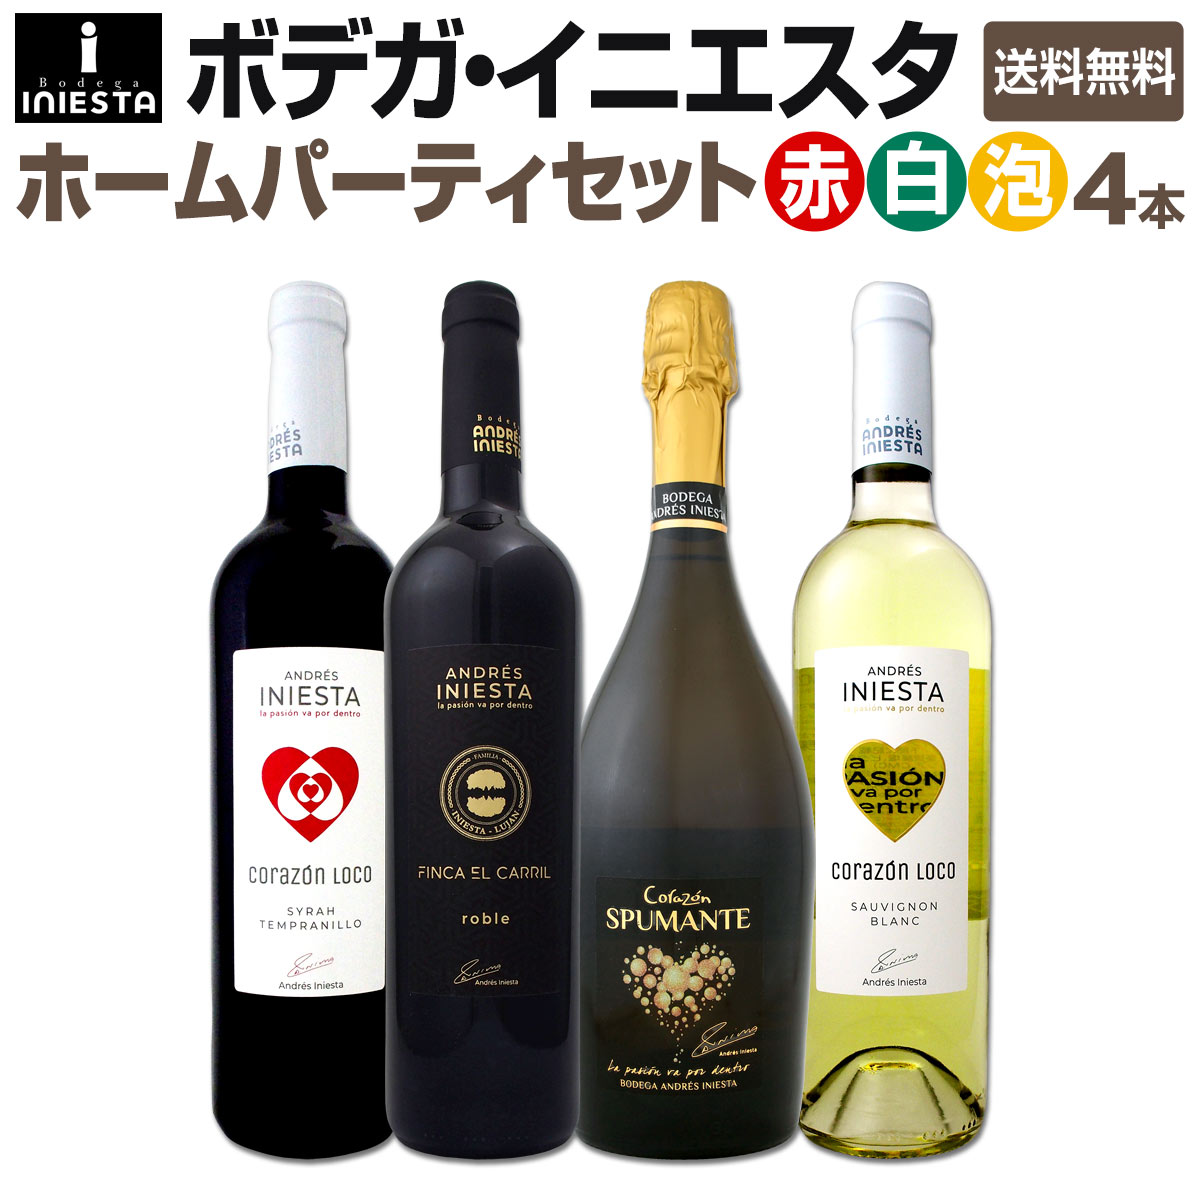 楽天市場 送料無料 日本でプレーするイニエスタ選手を応援しよう 当店独占直輸入の上級赤ワインとスパークリングワインも入った ボデガ イニエスタ のワインセット 4本 京橋ワイン